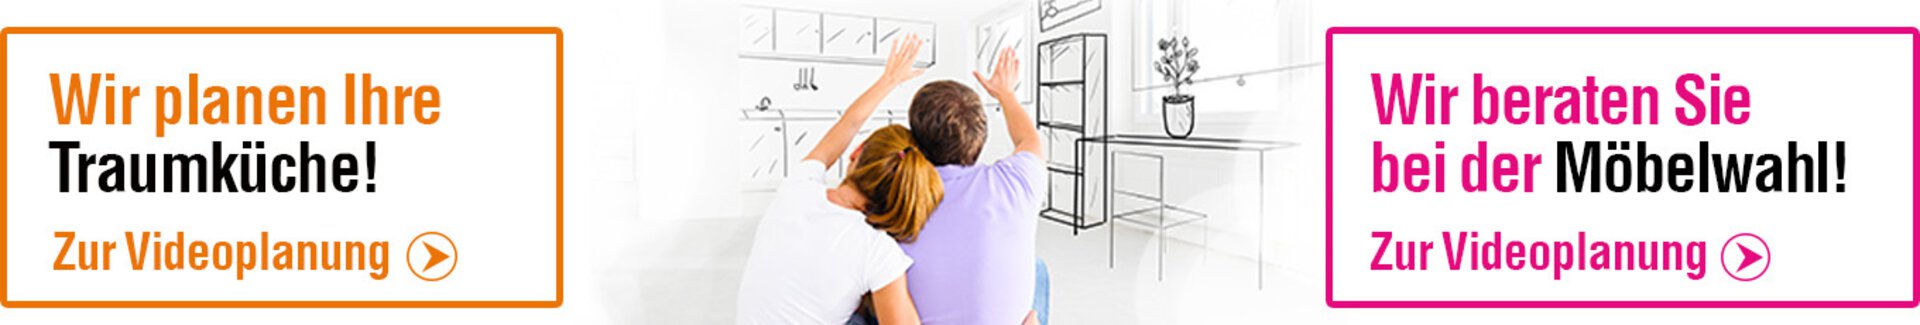 Banner-Bild zur Videoplanung für Küchen und Möbel.